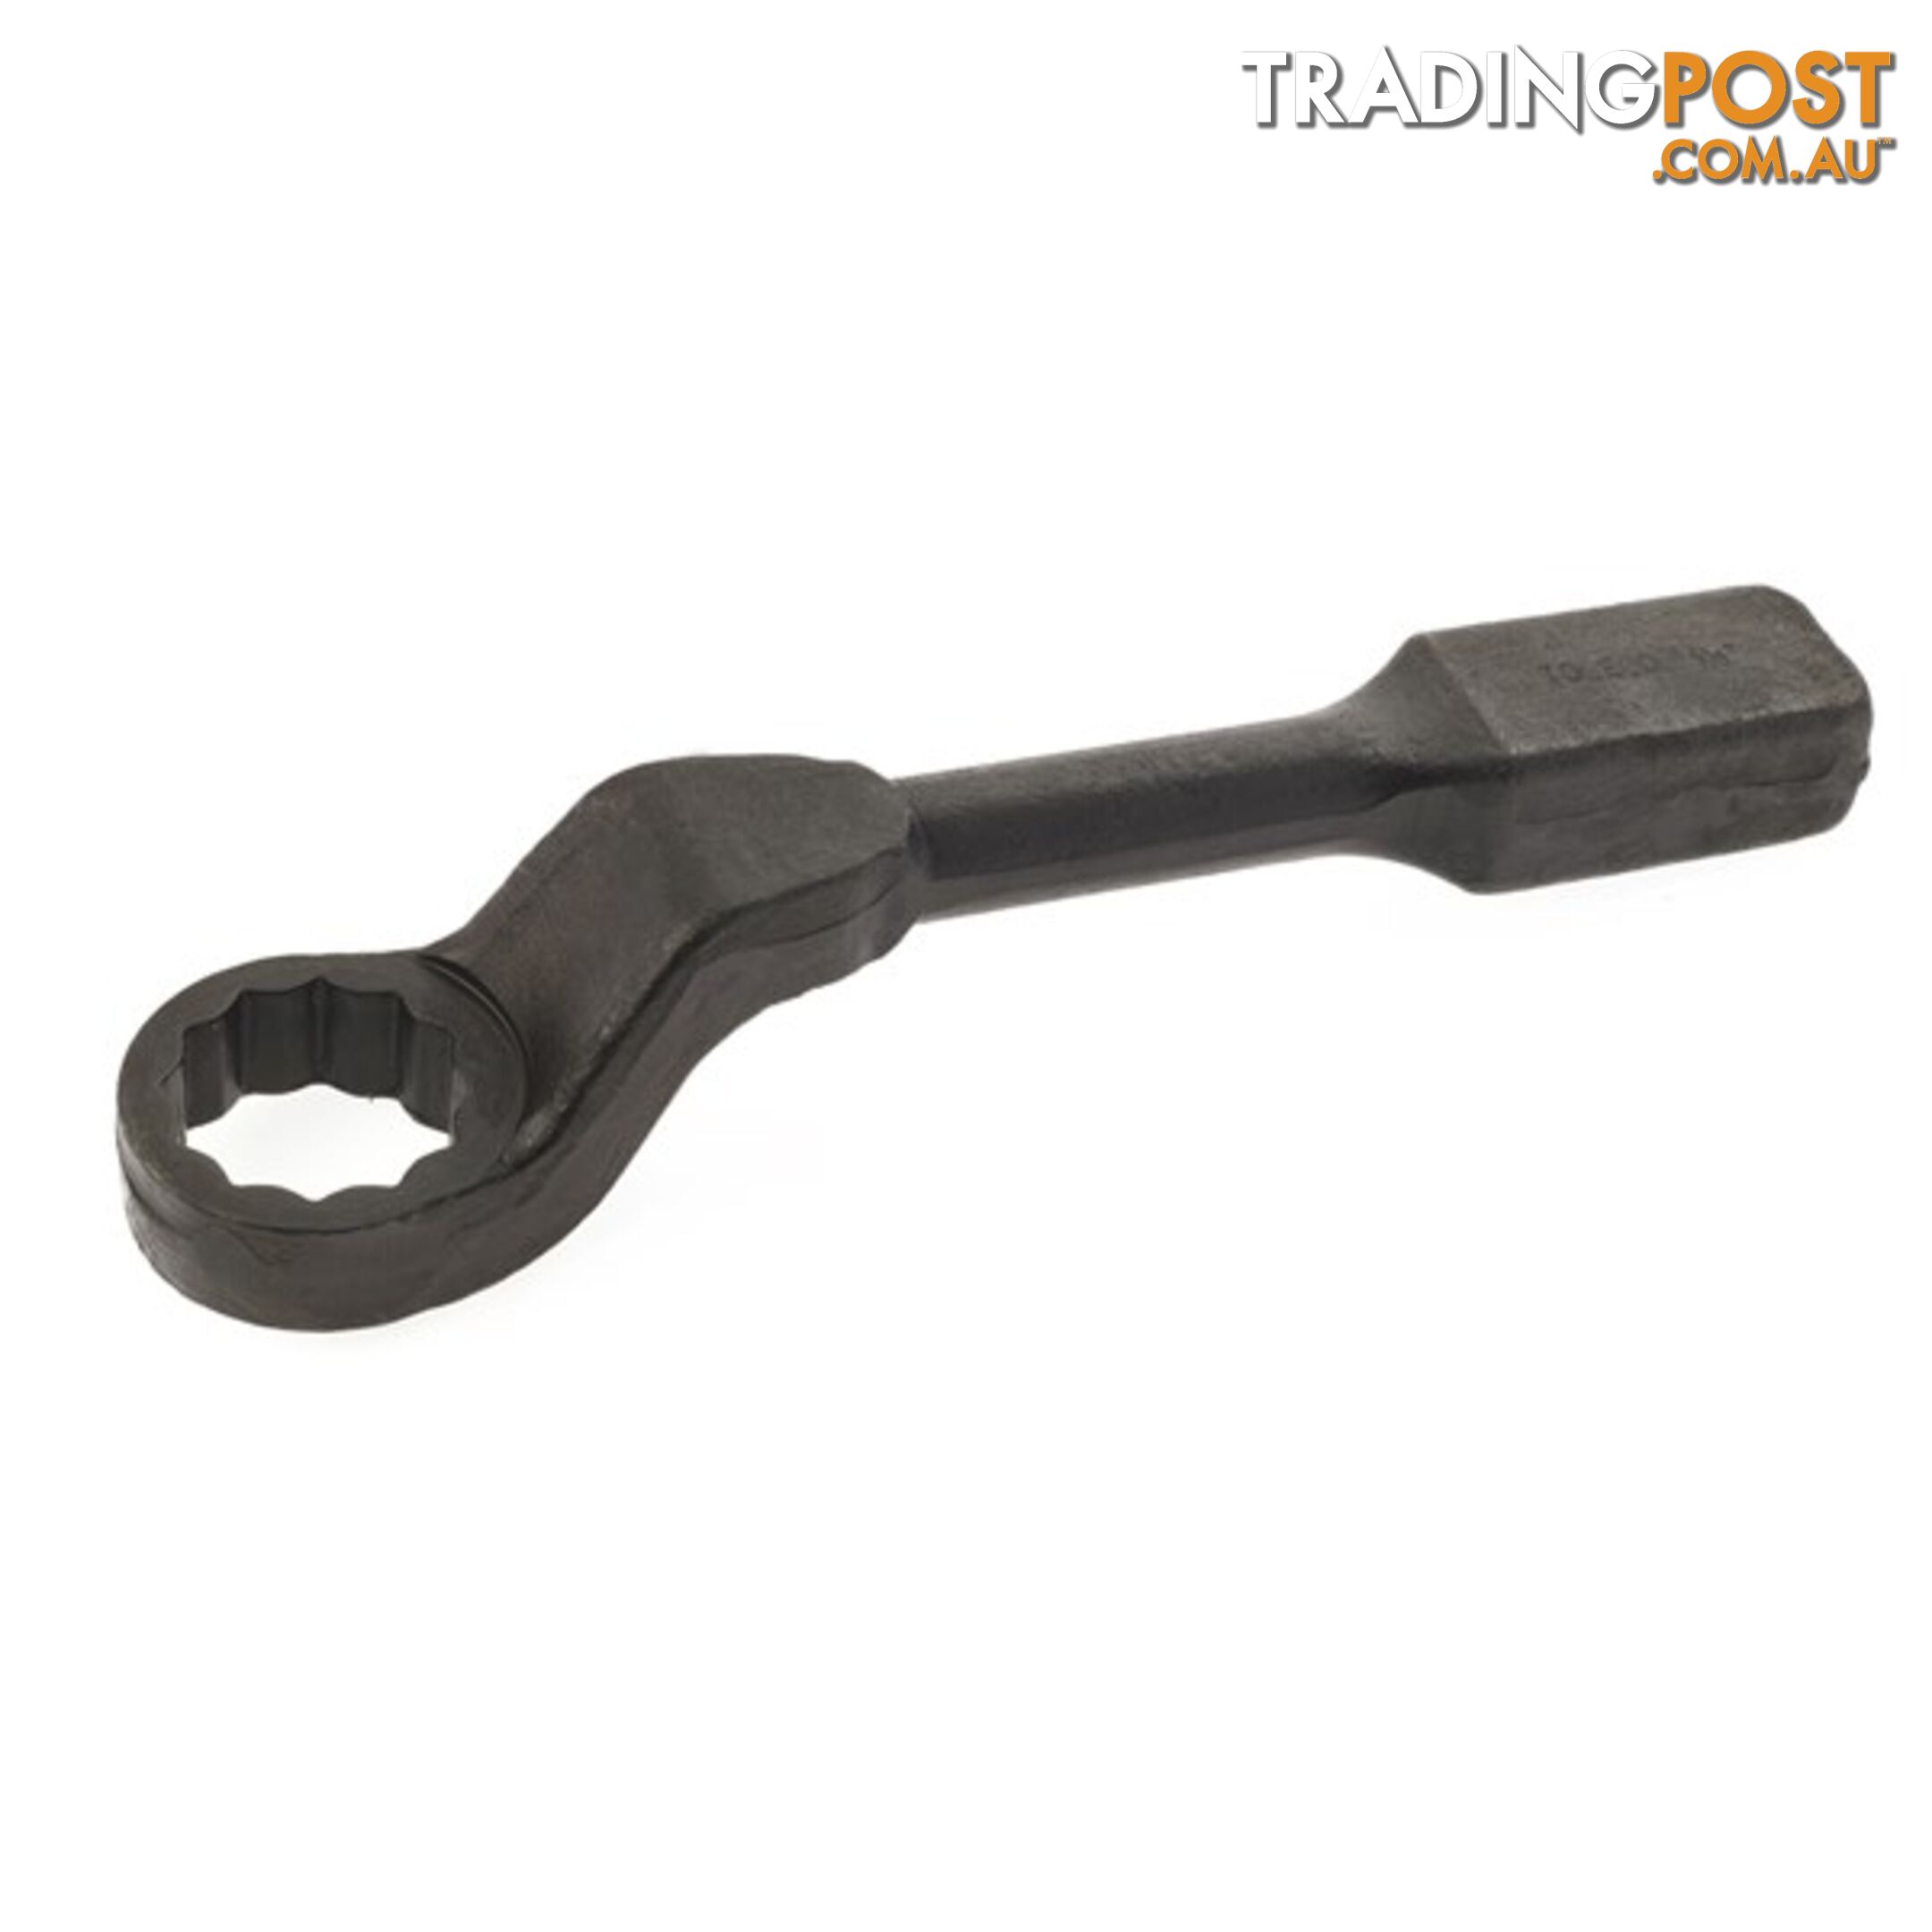 Offset / Cranked Slogging Wrench  - 1 5/16 " SKU - SWR1312C